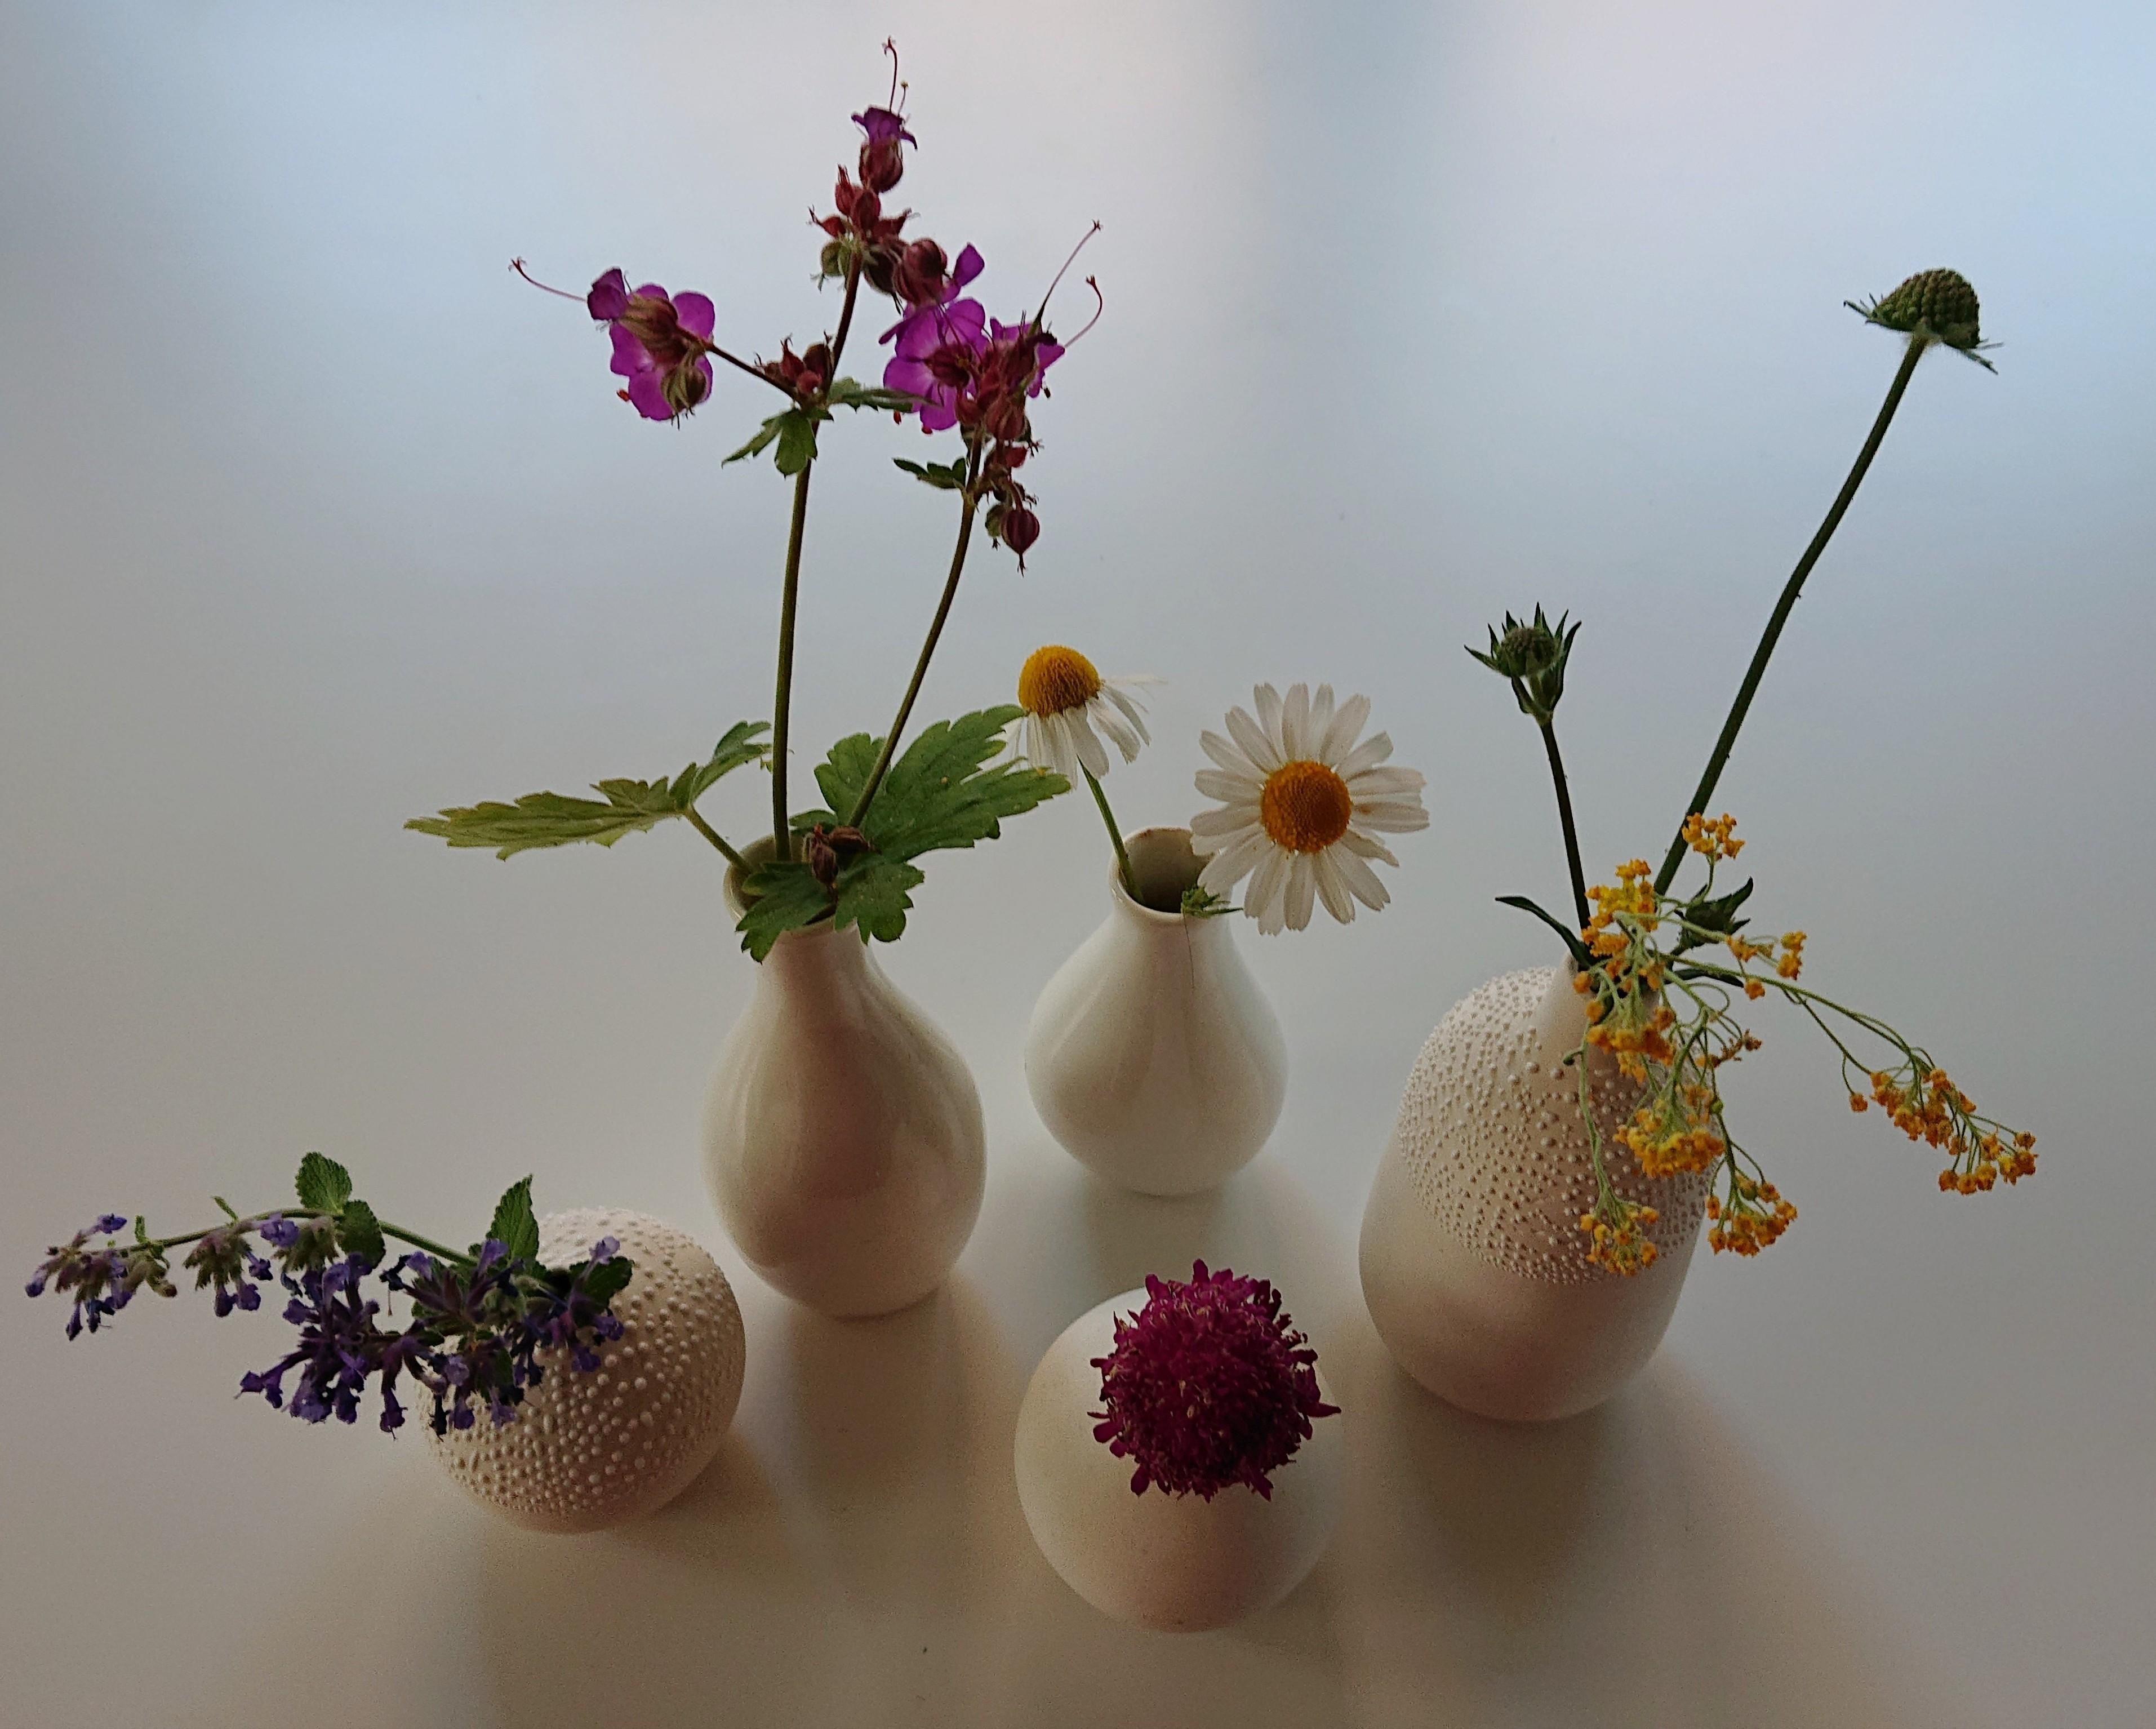 Obwohl klein und filigran bringen die Vasen doch eine unglaubliche Vielfalt auf den Tisch 🌺 #Tischdeko